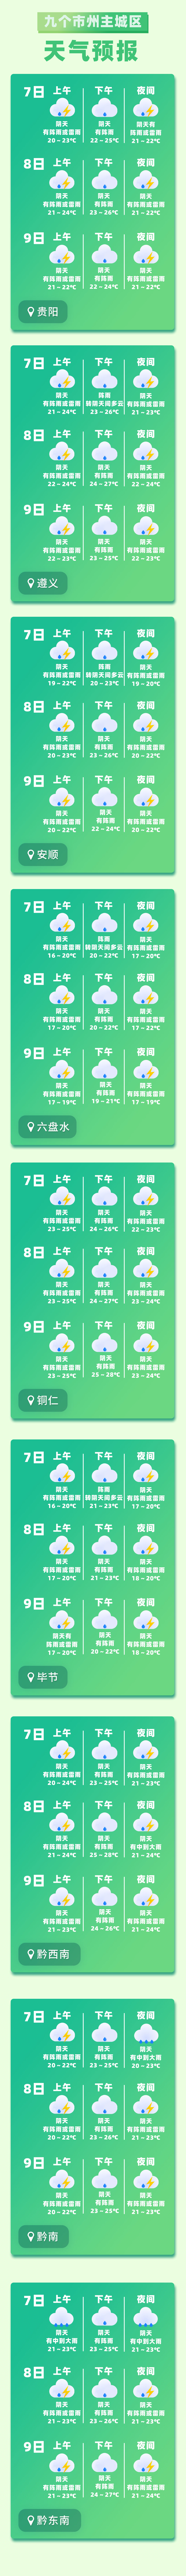 贵州天气预报十天图片